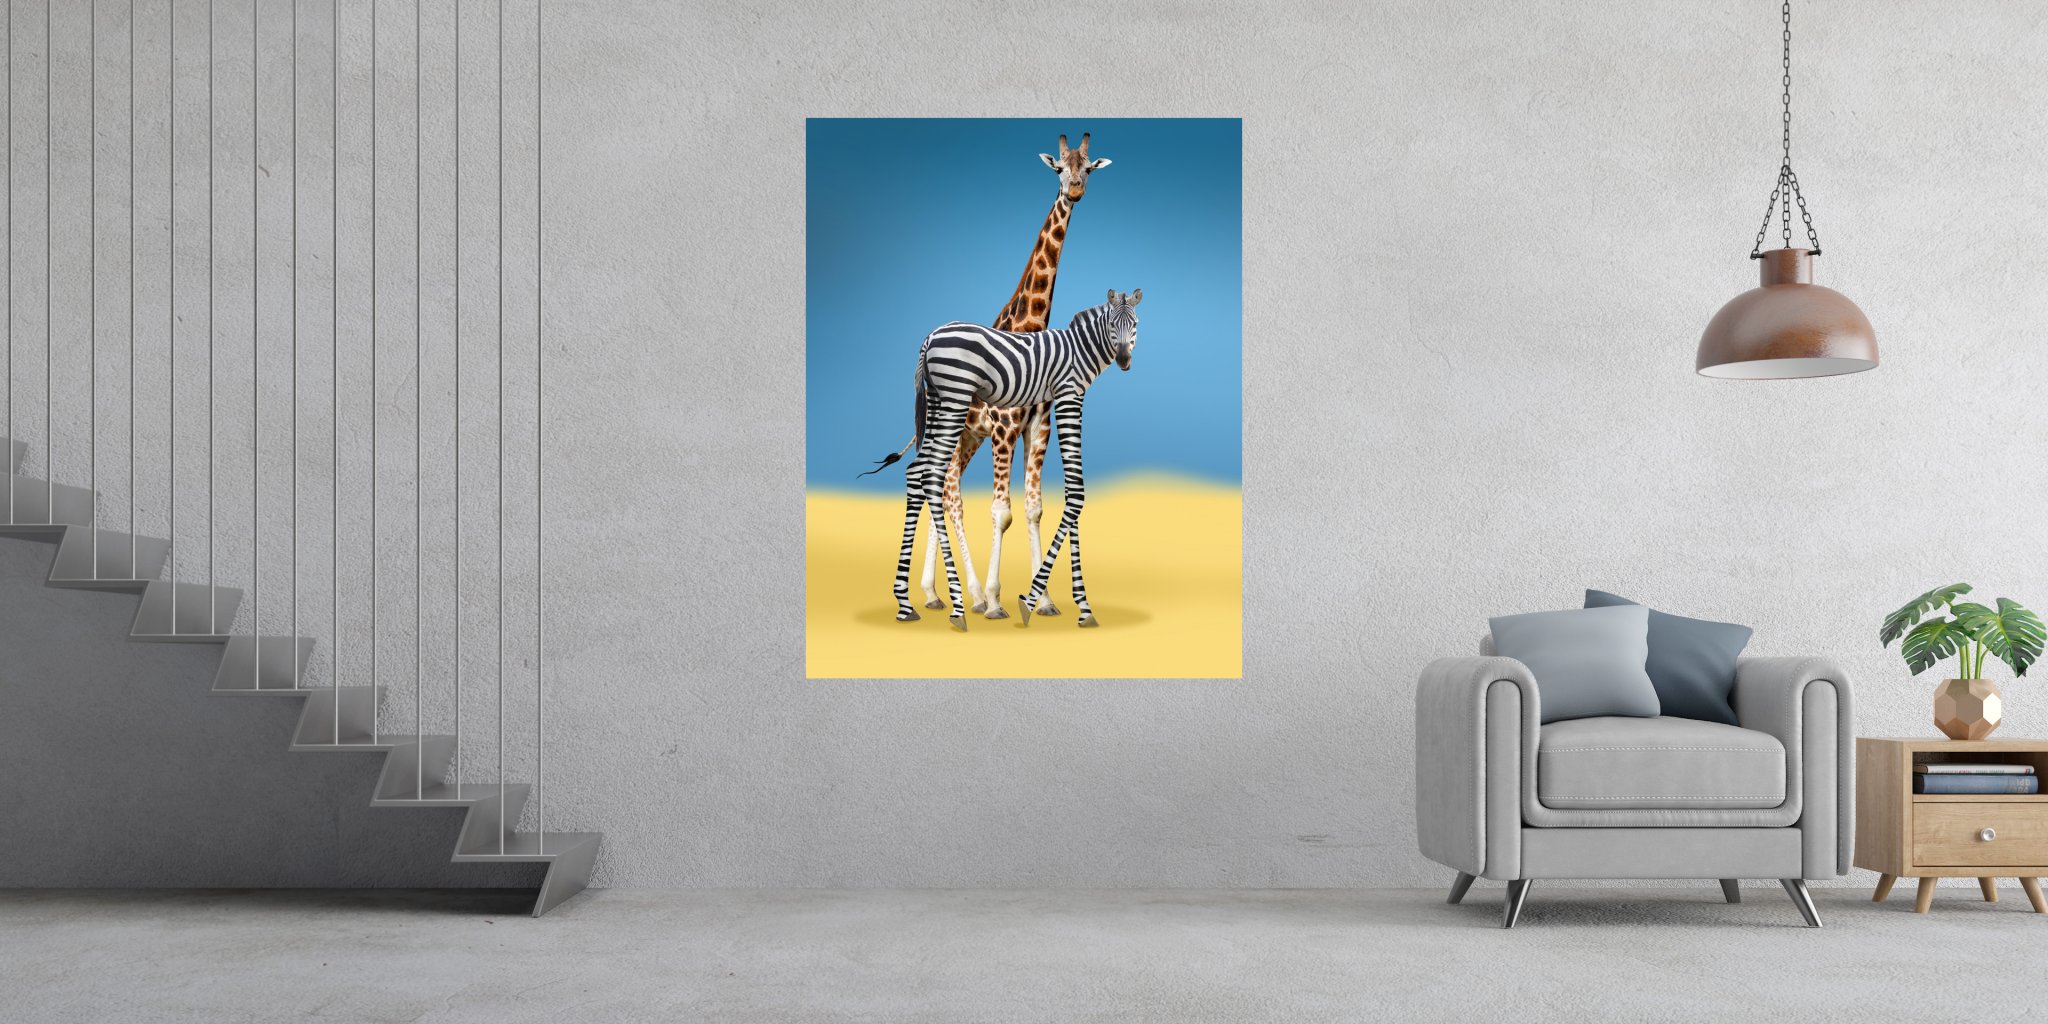 Kreative Bildbearbeitung Composing Artwork zeigt eine Giraffen-Vetar mit seinem langbeinigem Sohn der ein Zebra ist im Wohnbeispiel.